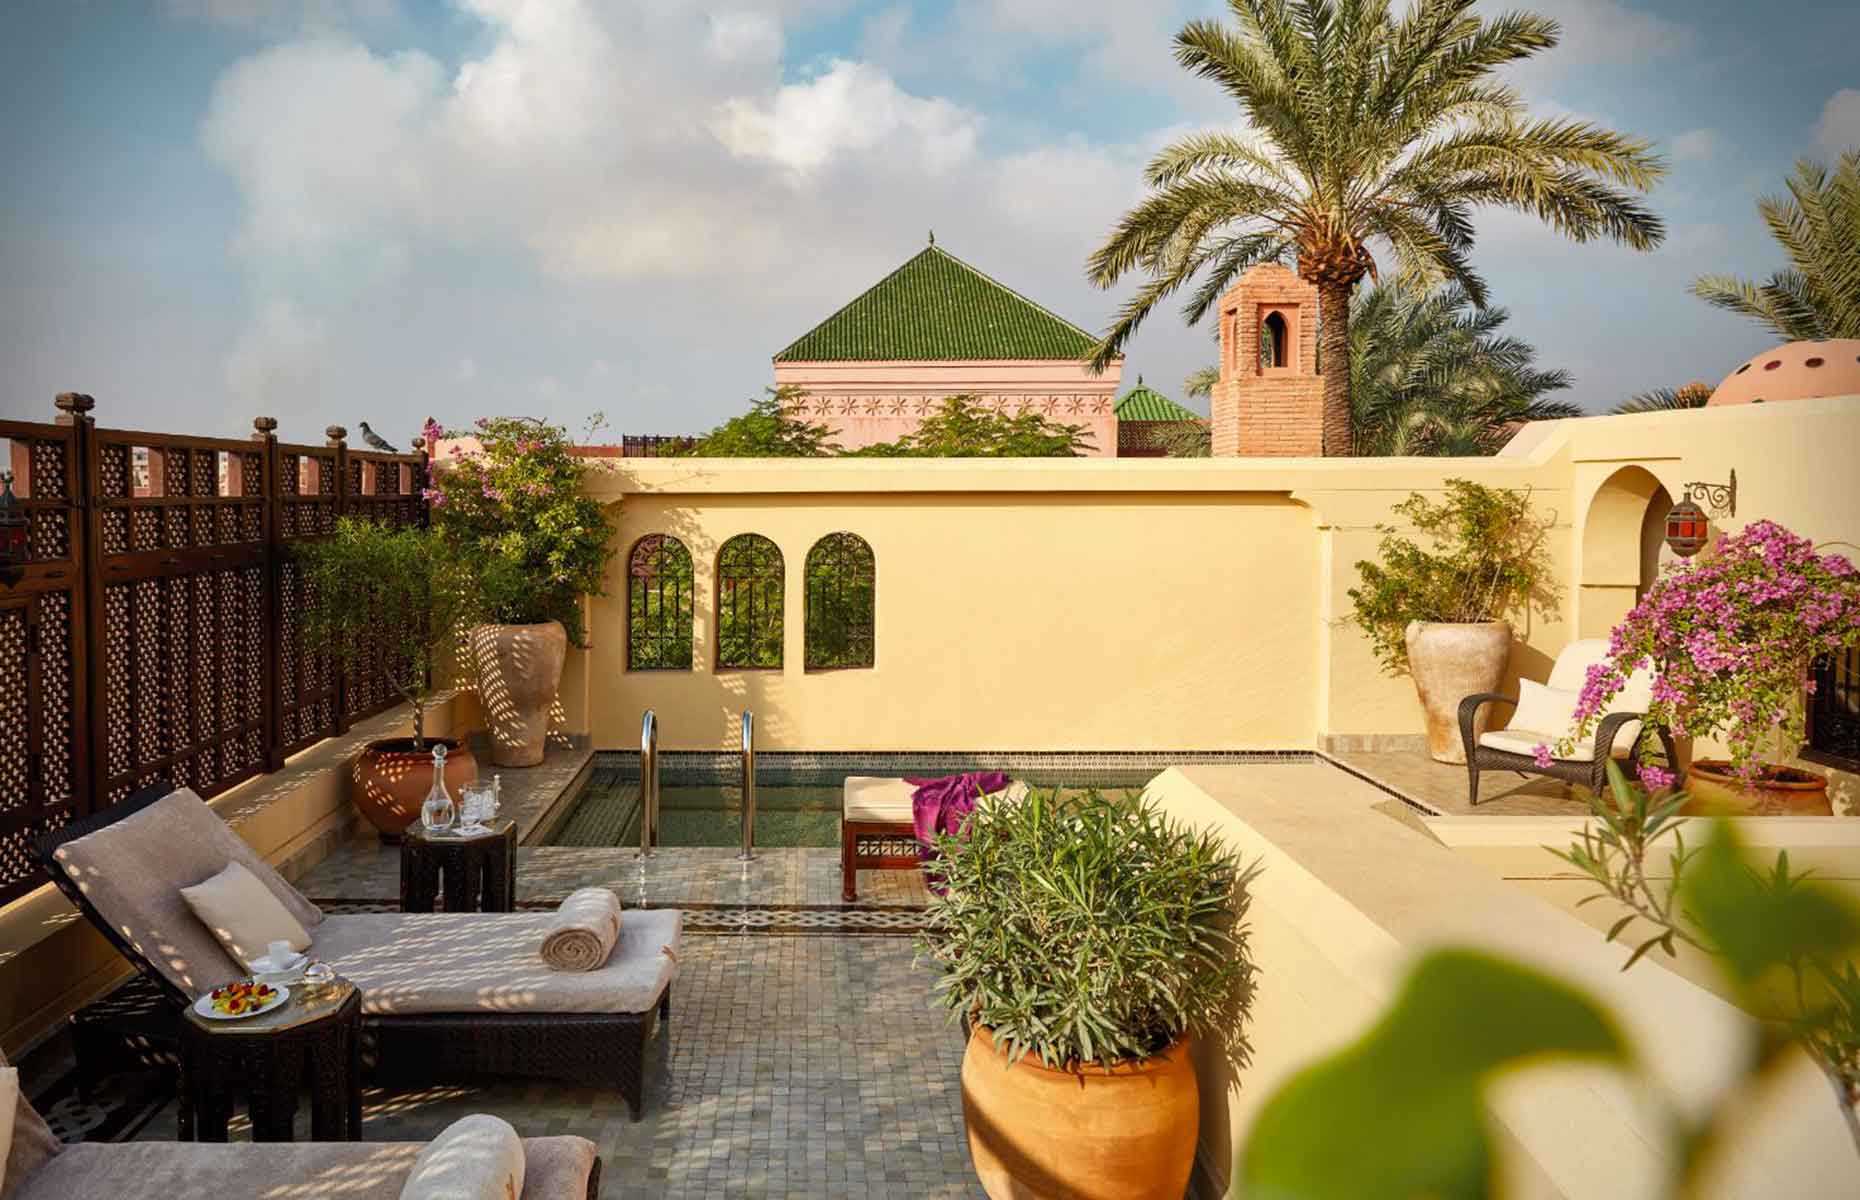 Hôtel Royal Mansour - Séjour Maroc, Voyage Marrakech